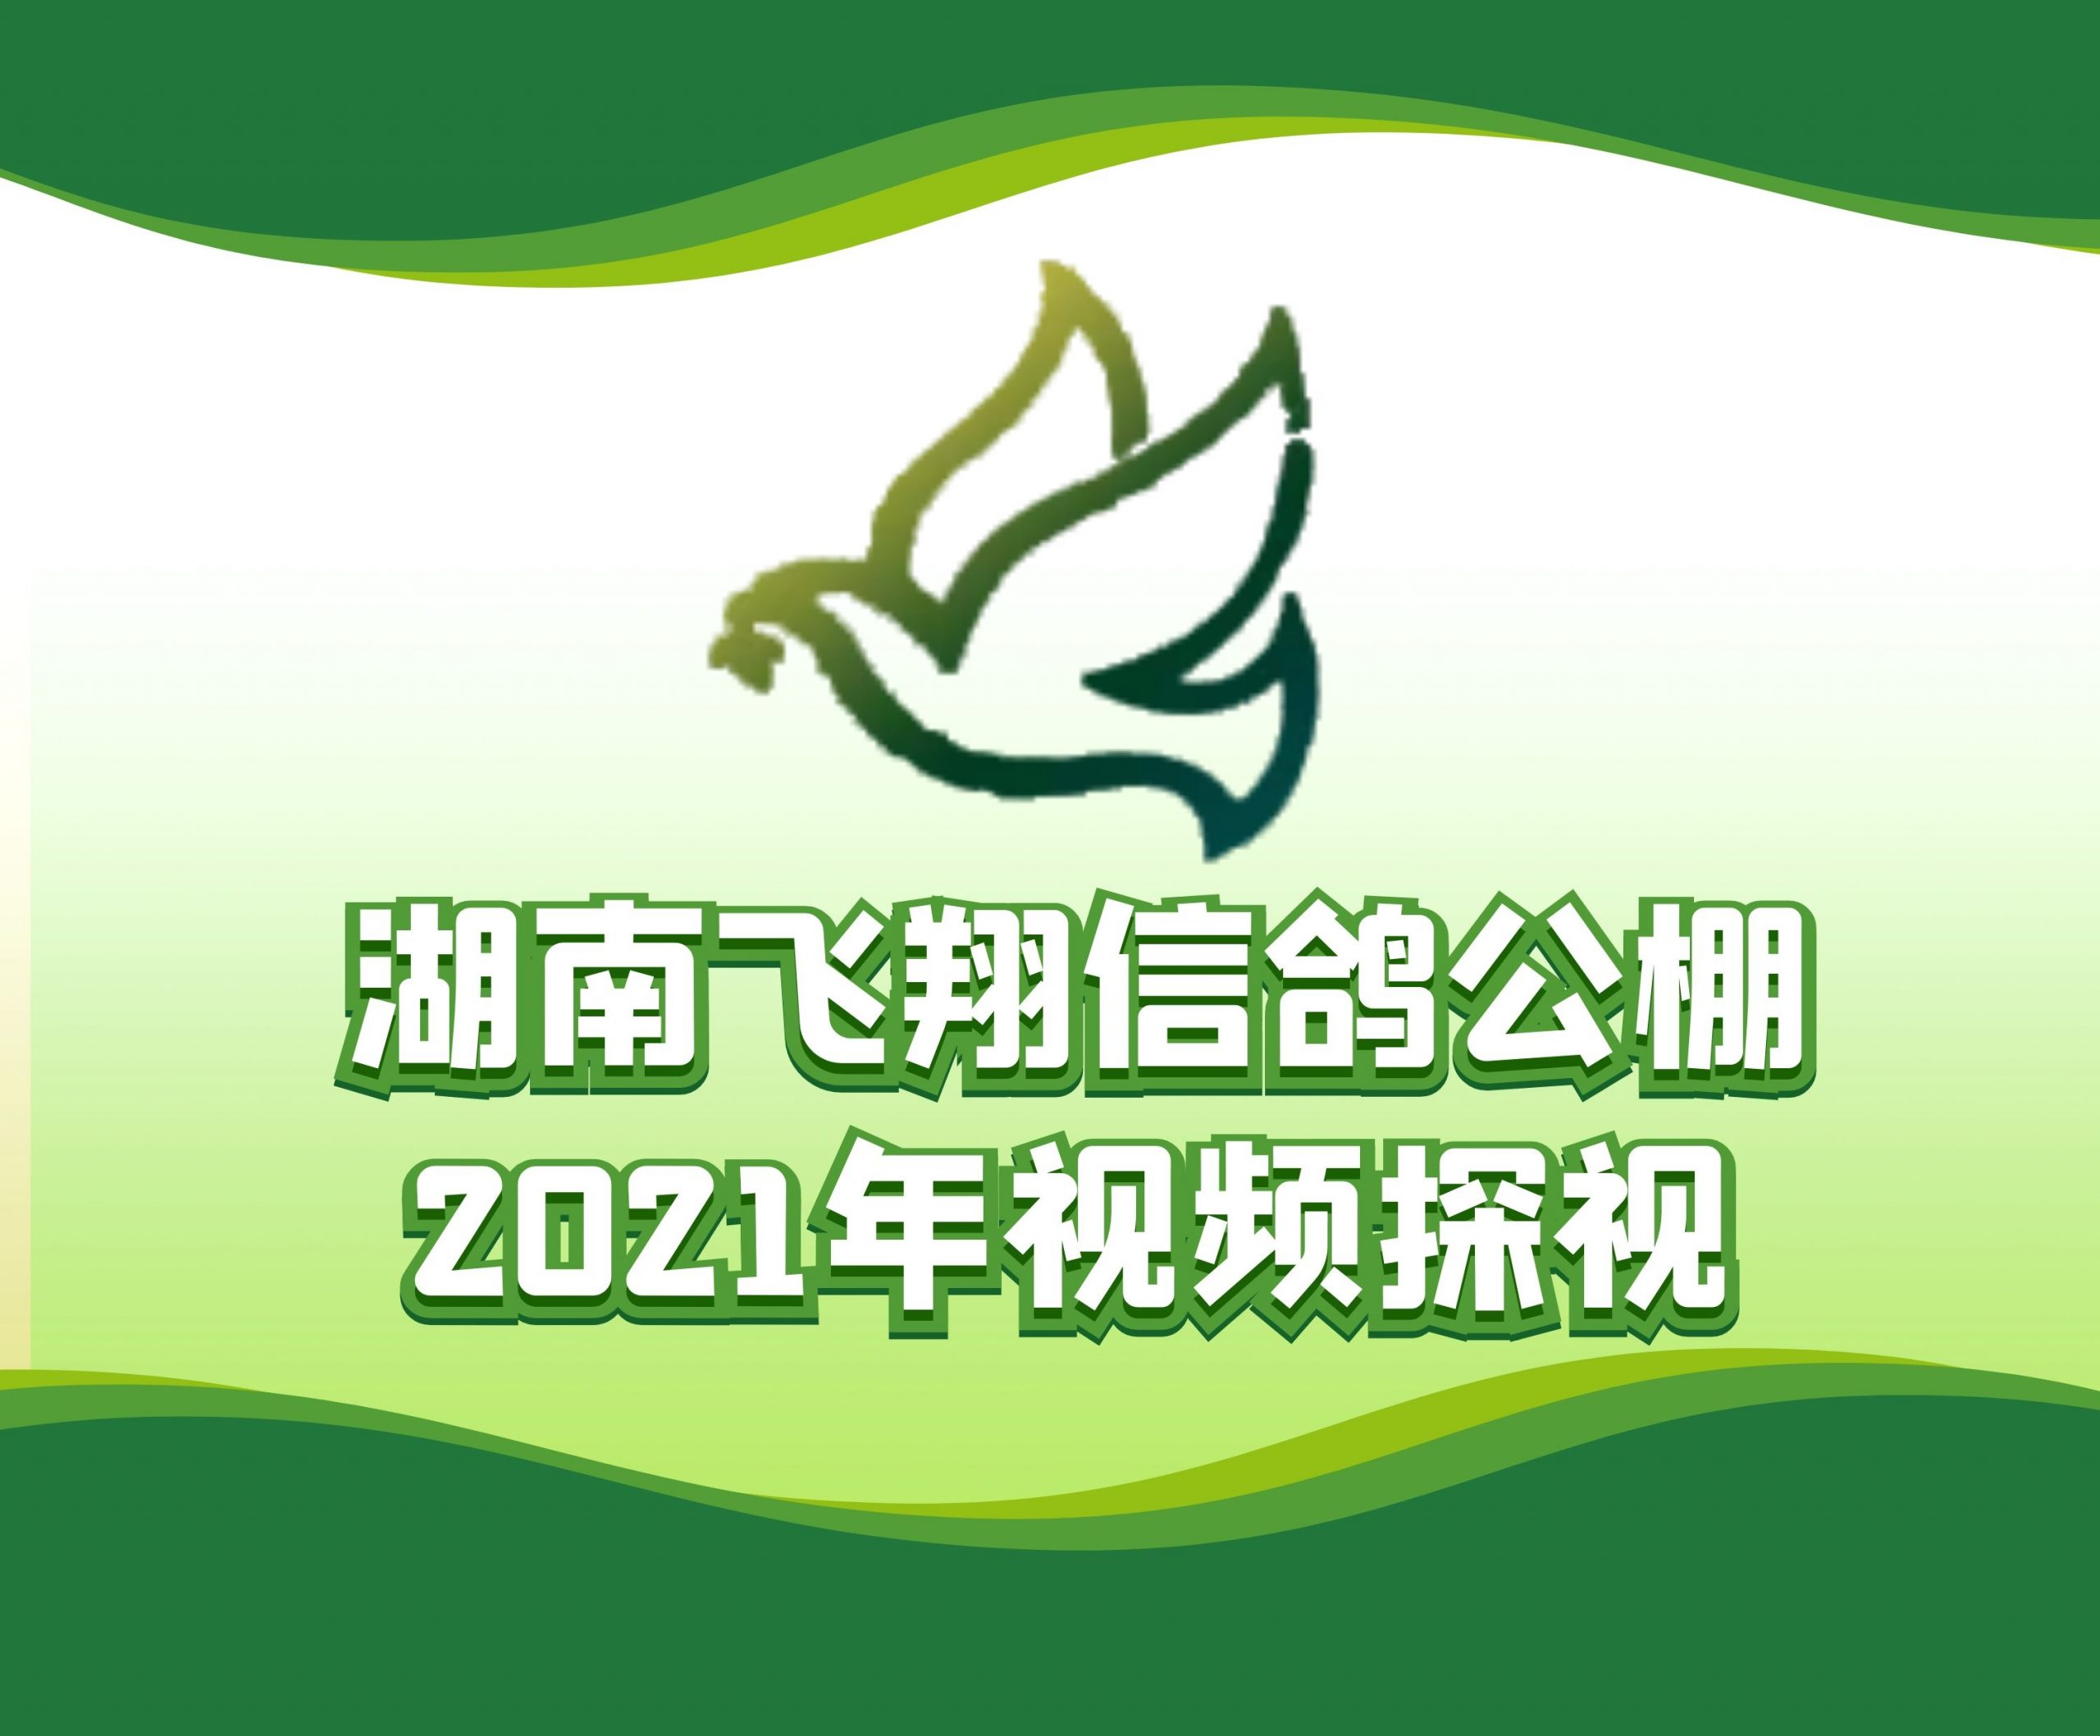 杨材槟-2021-14-0165878